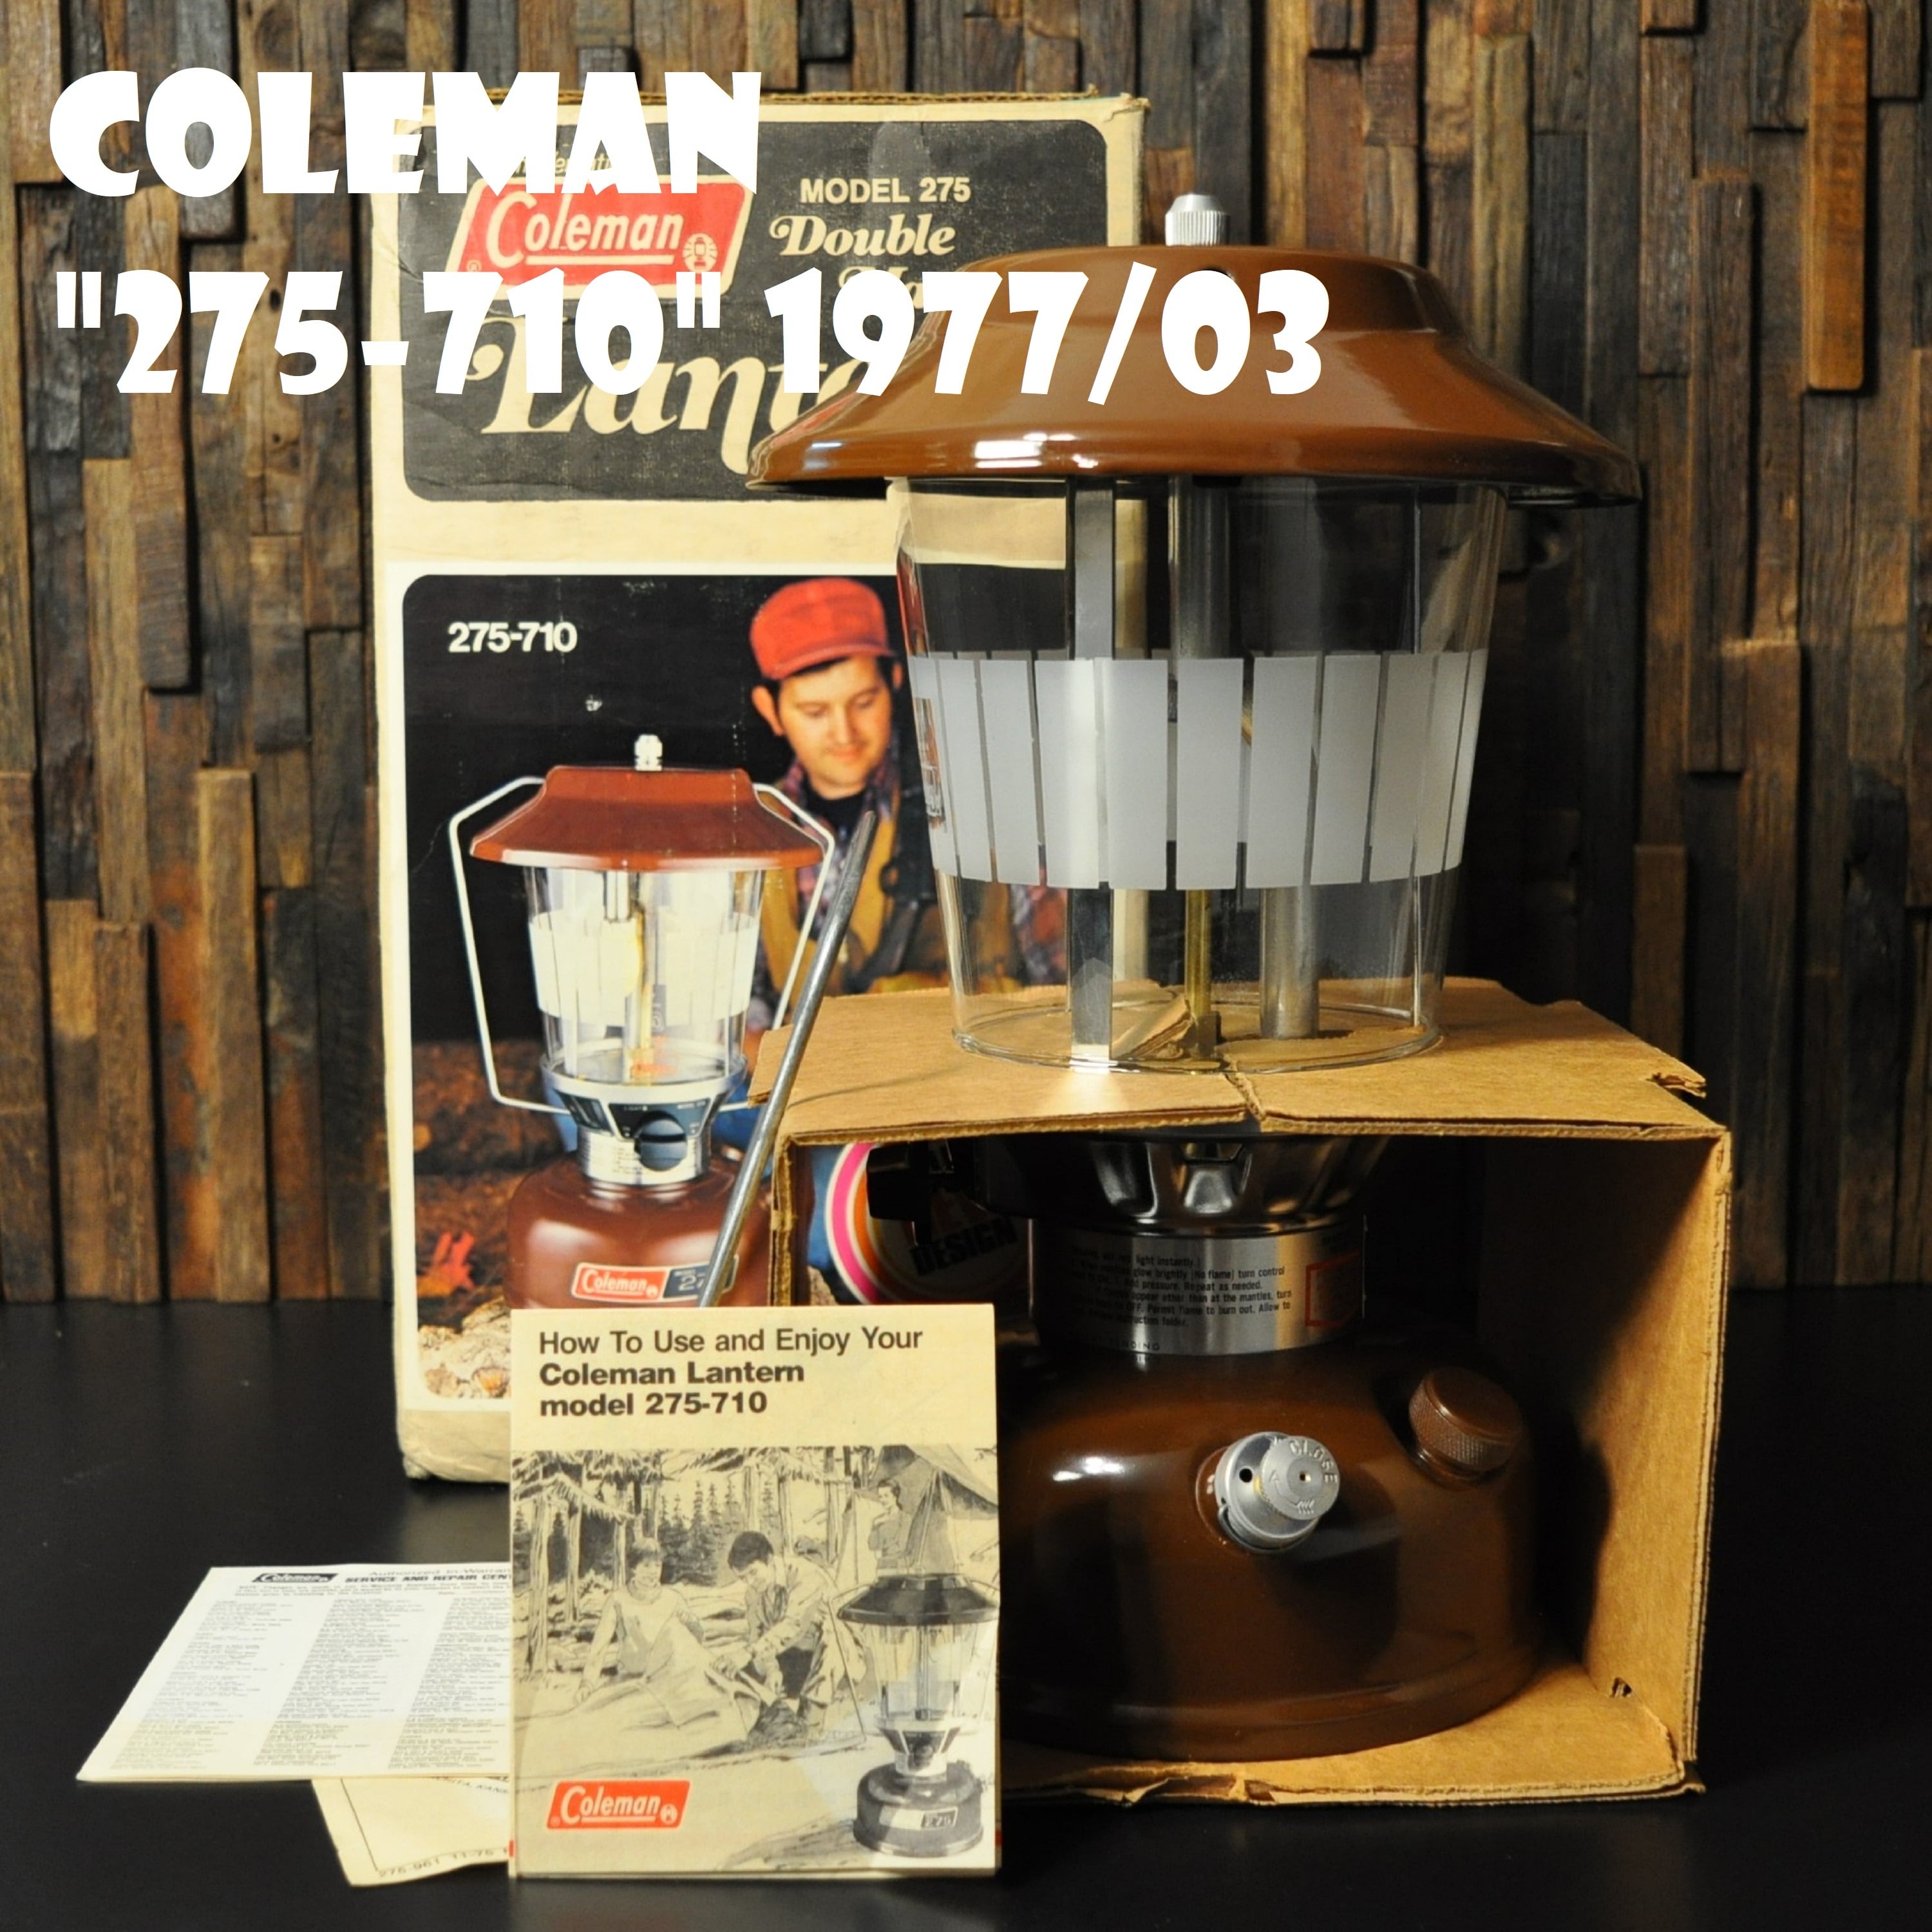 コールマン 275-710 1977年3月製造 ブラウン ツーマントル ランタン